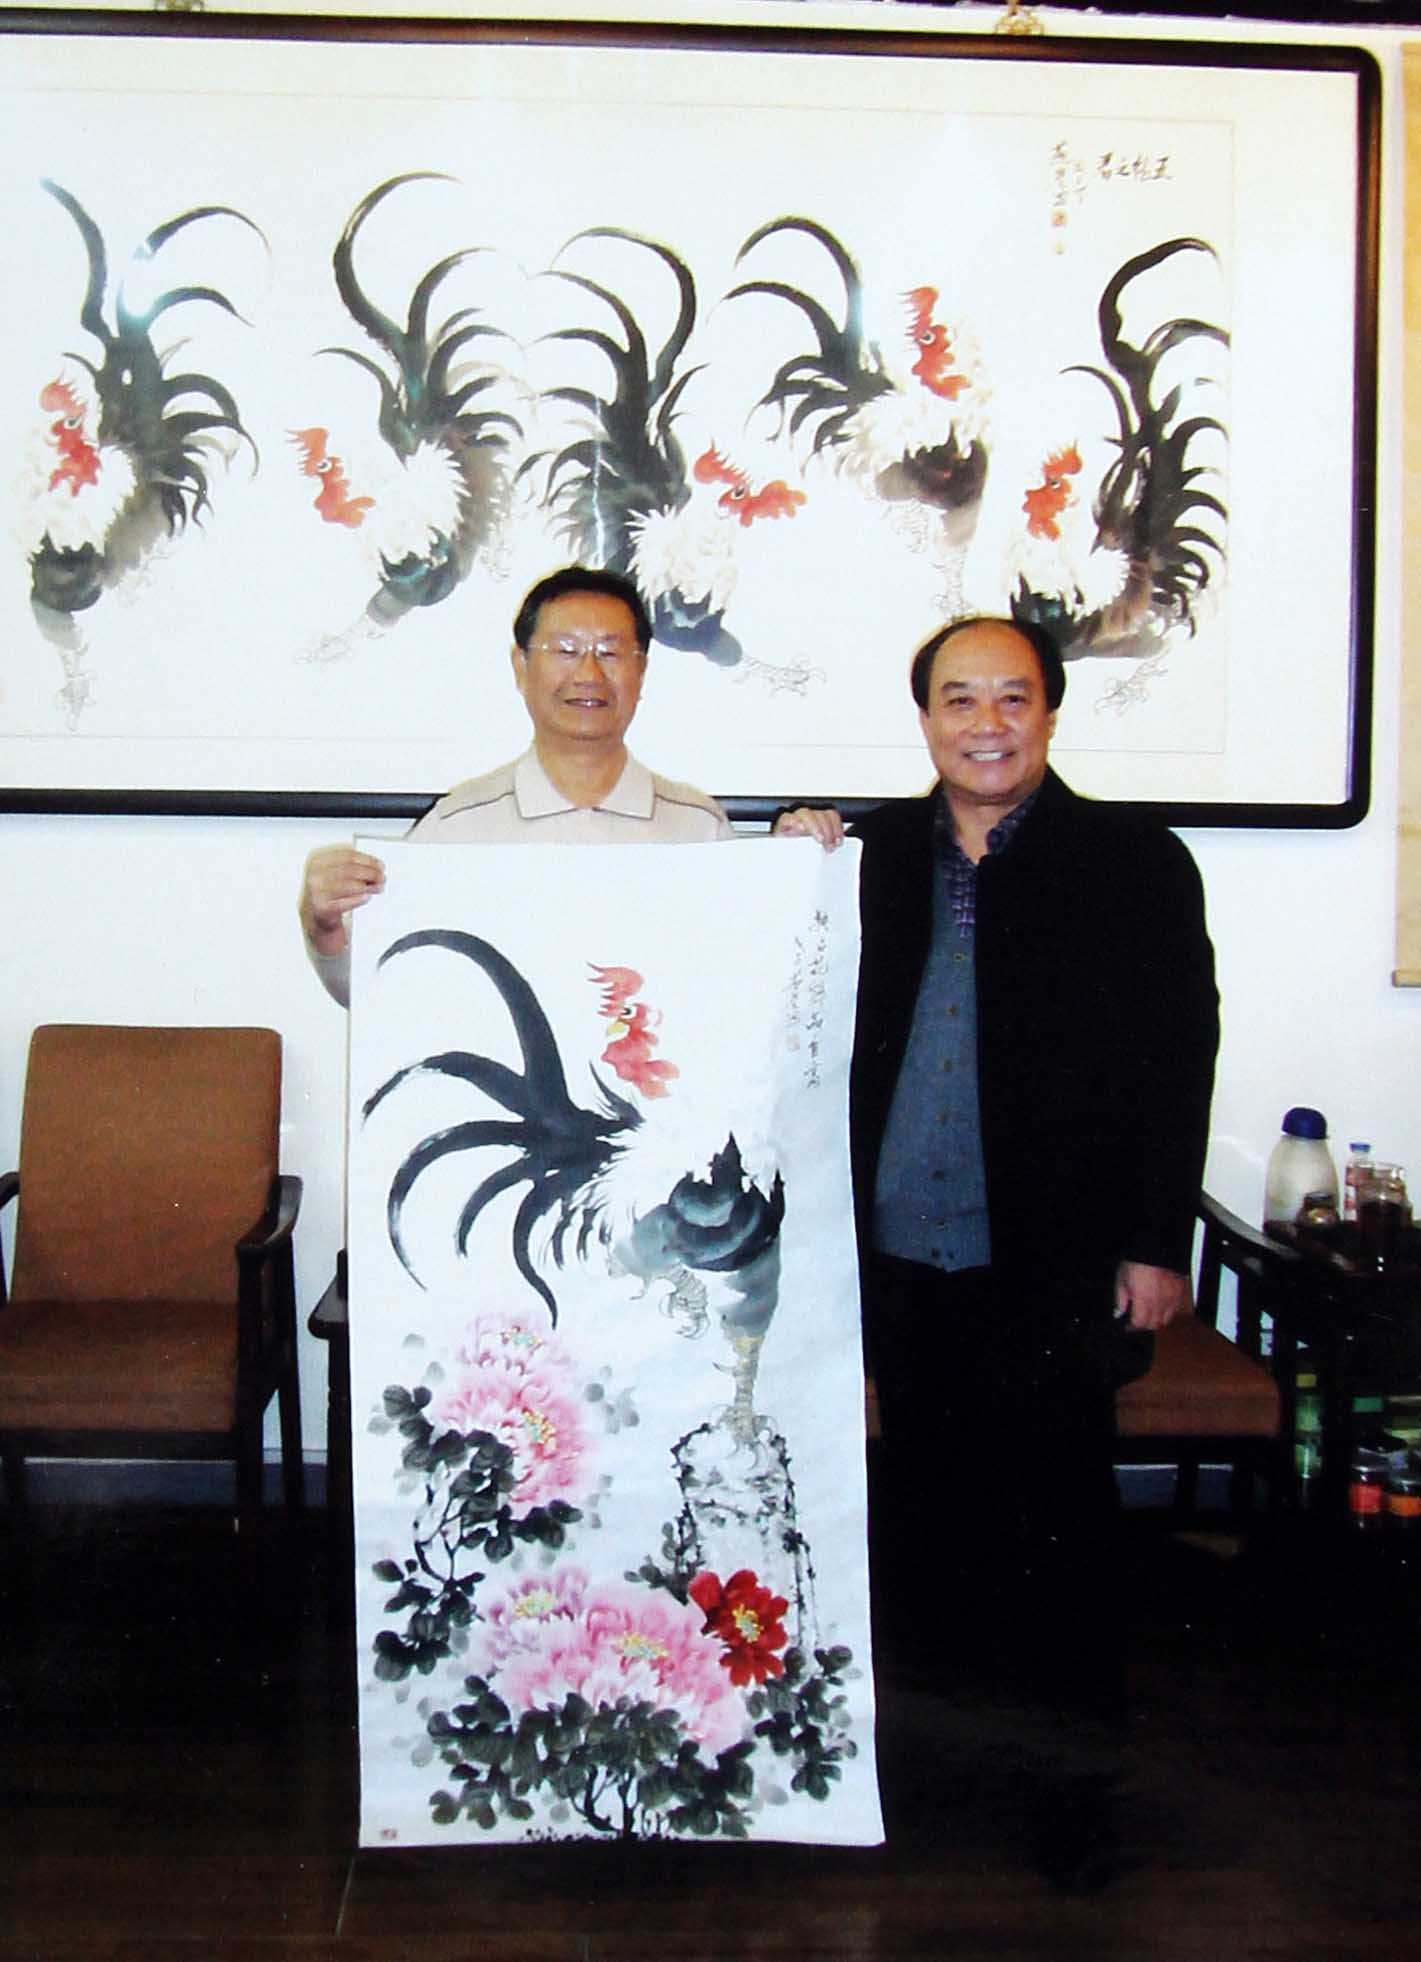 白燕君与河北省军区司令员宪福成拍摄于白燕君工作室